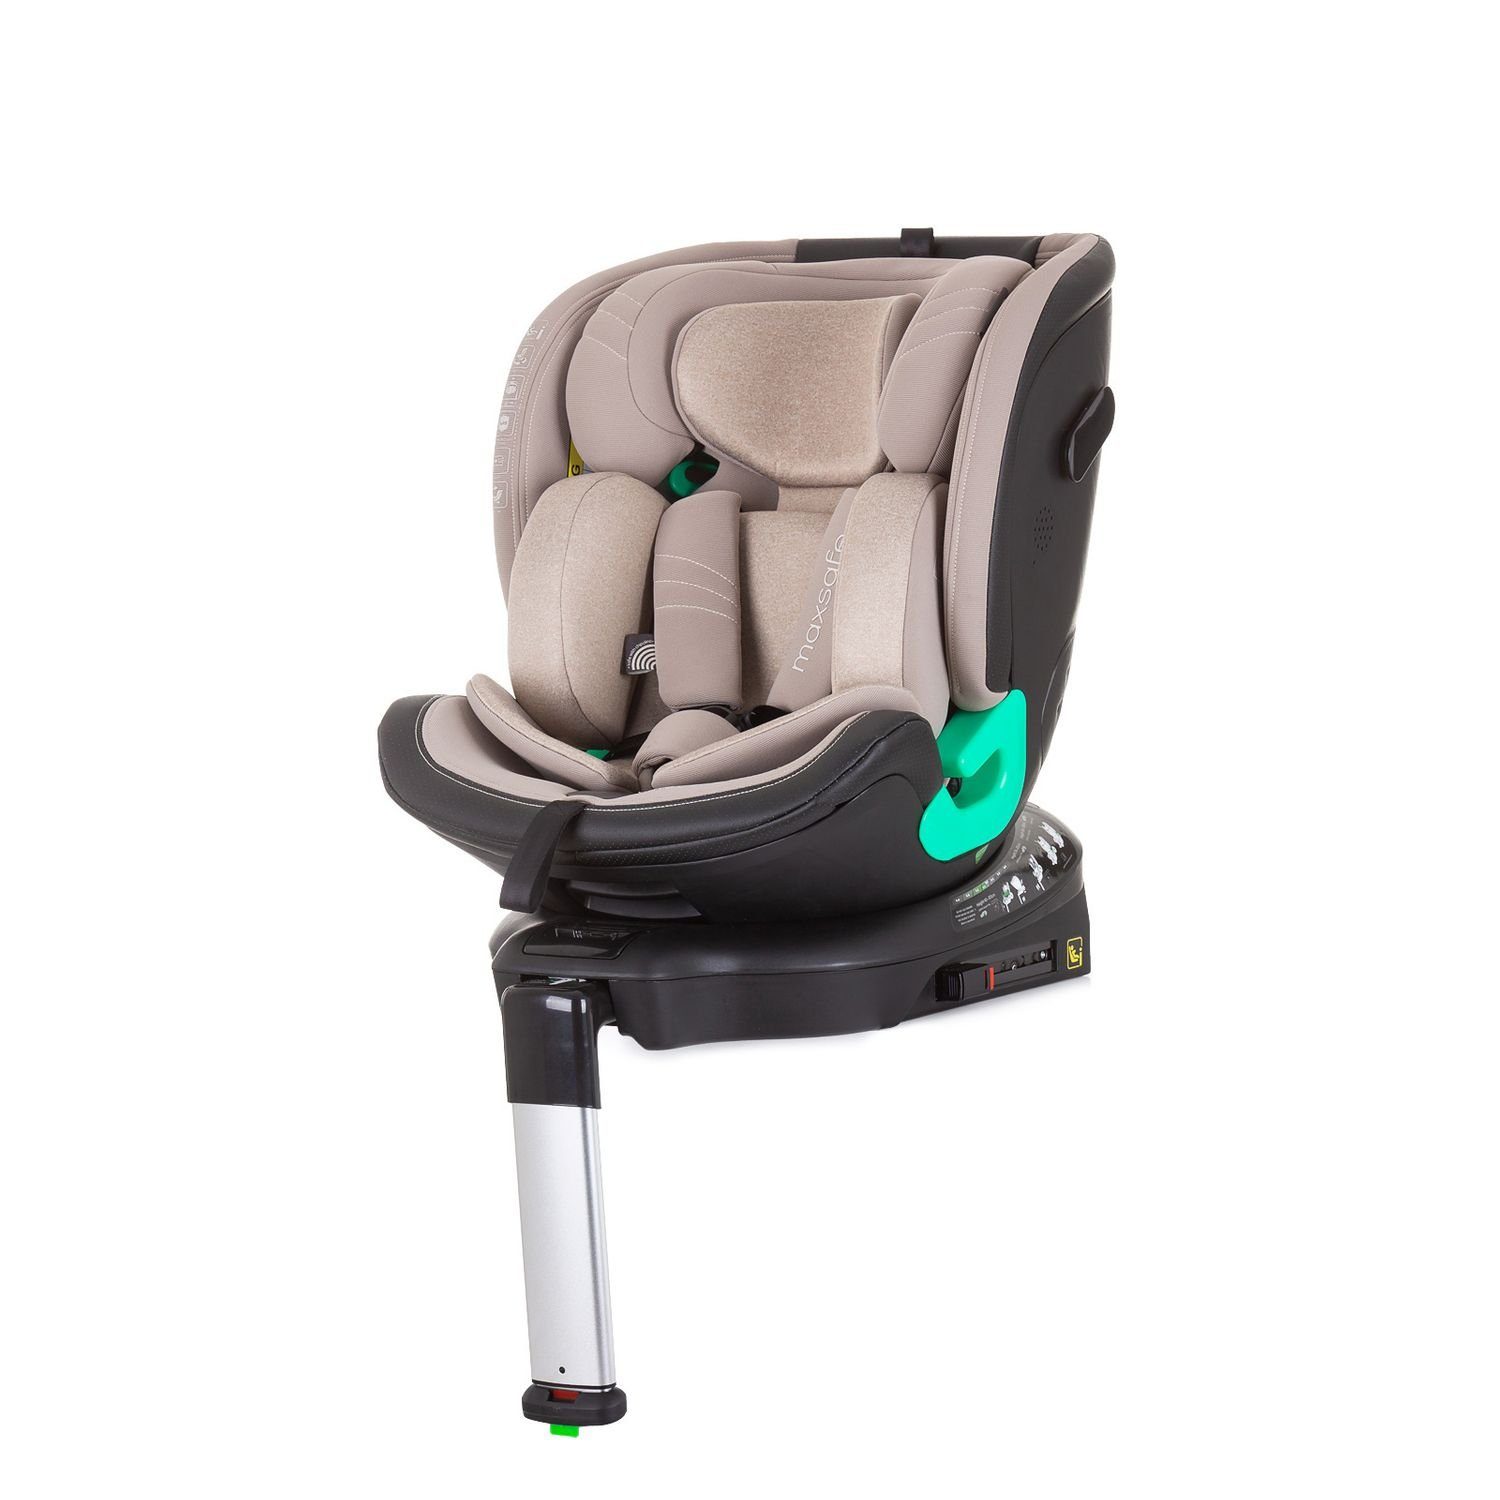 Chipolino Autokindersitz Kindersitz i-Size cm) bis: - Safe, drehbar Stützbein 36 360° 150 kg, beige (40 Max Isofix